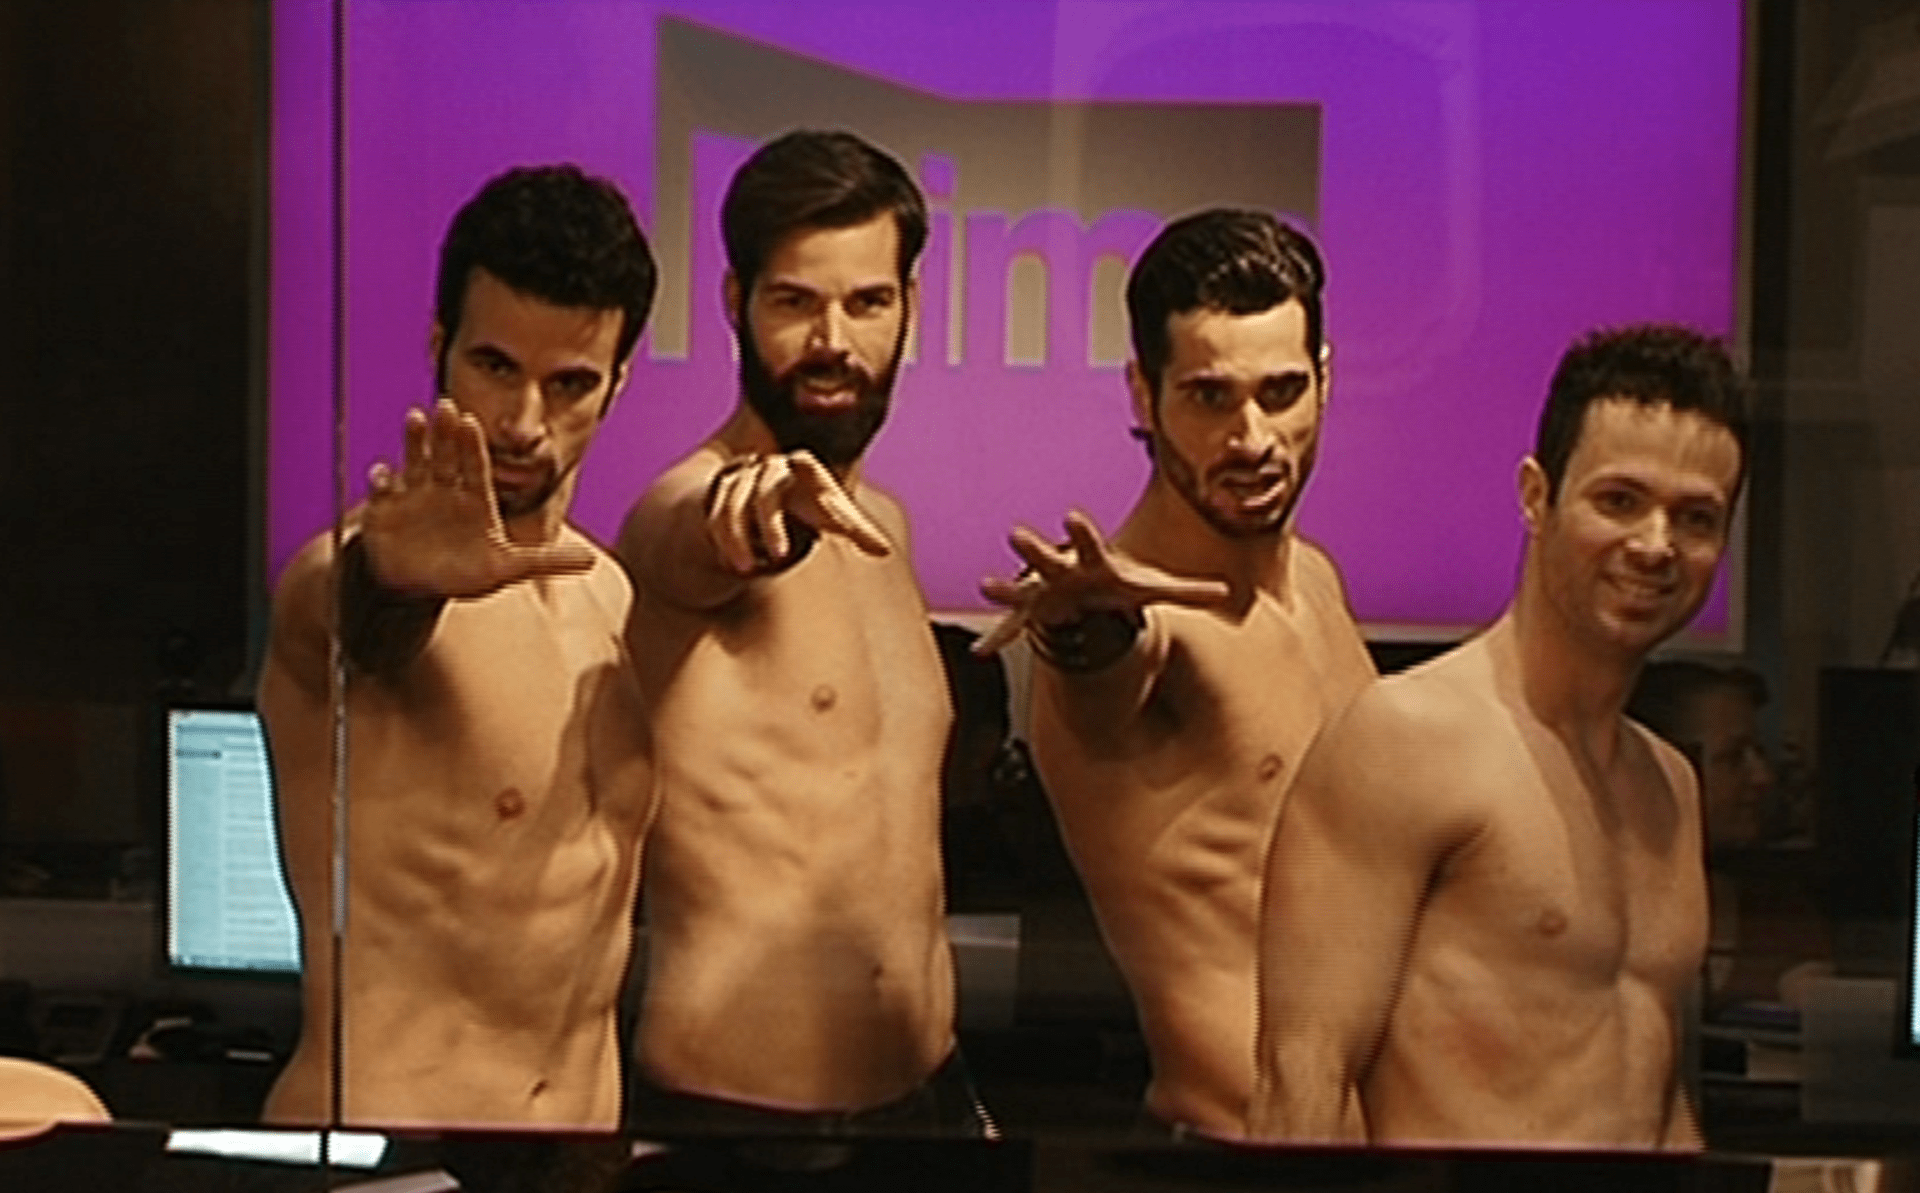 Video VIP zprávy: Skupina španělských tanečníků se objevila ve VIP zprávách